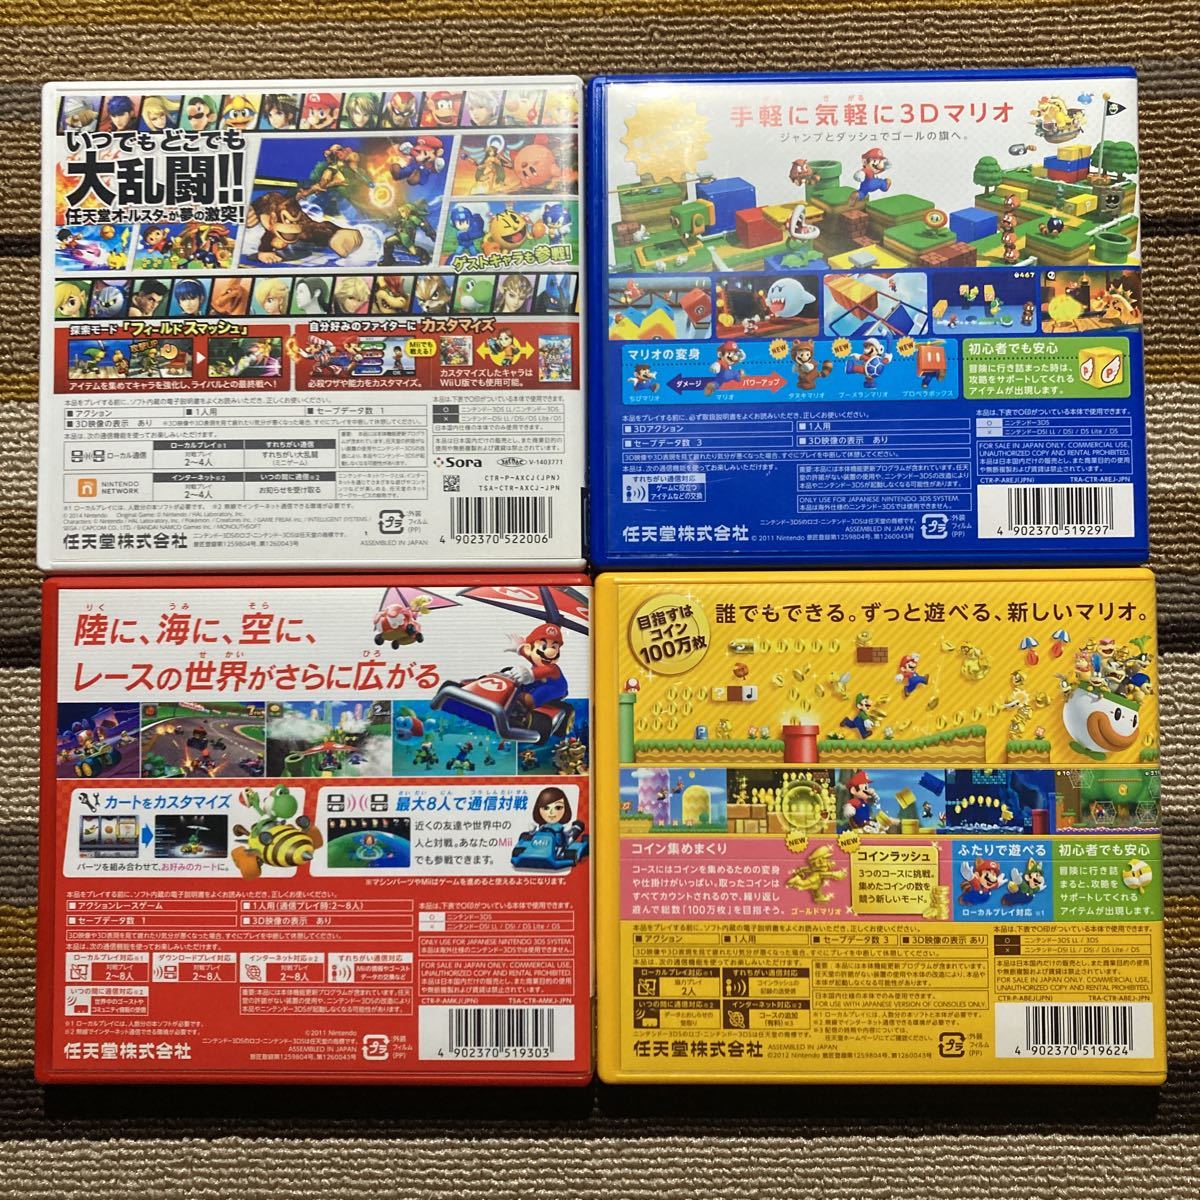 3DS 大乱闘スマッシュブラザーズ スーパーマリオ3Dランド マリオカート7 スーパーマリオブラザーズ2 